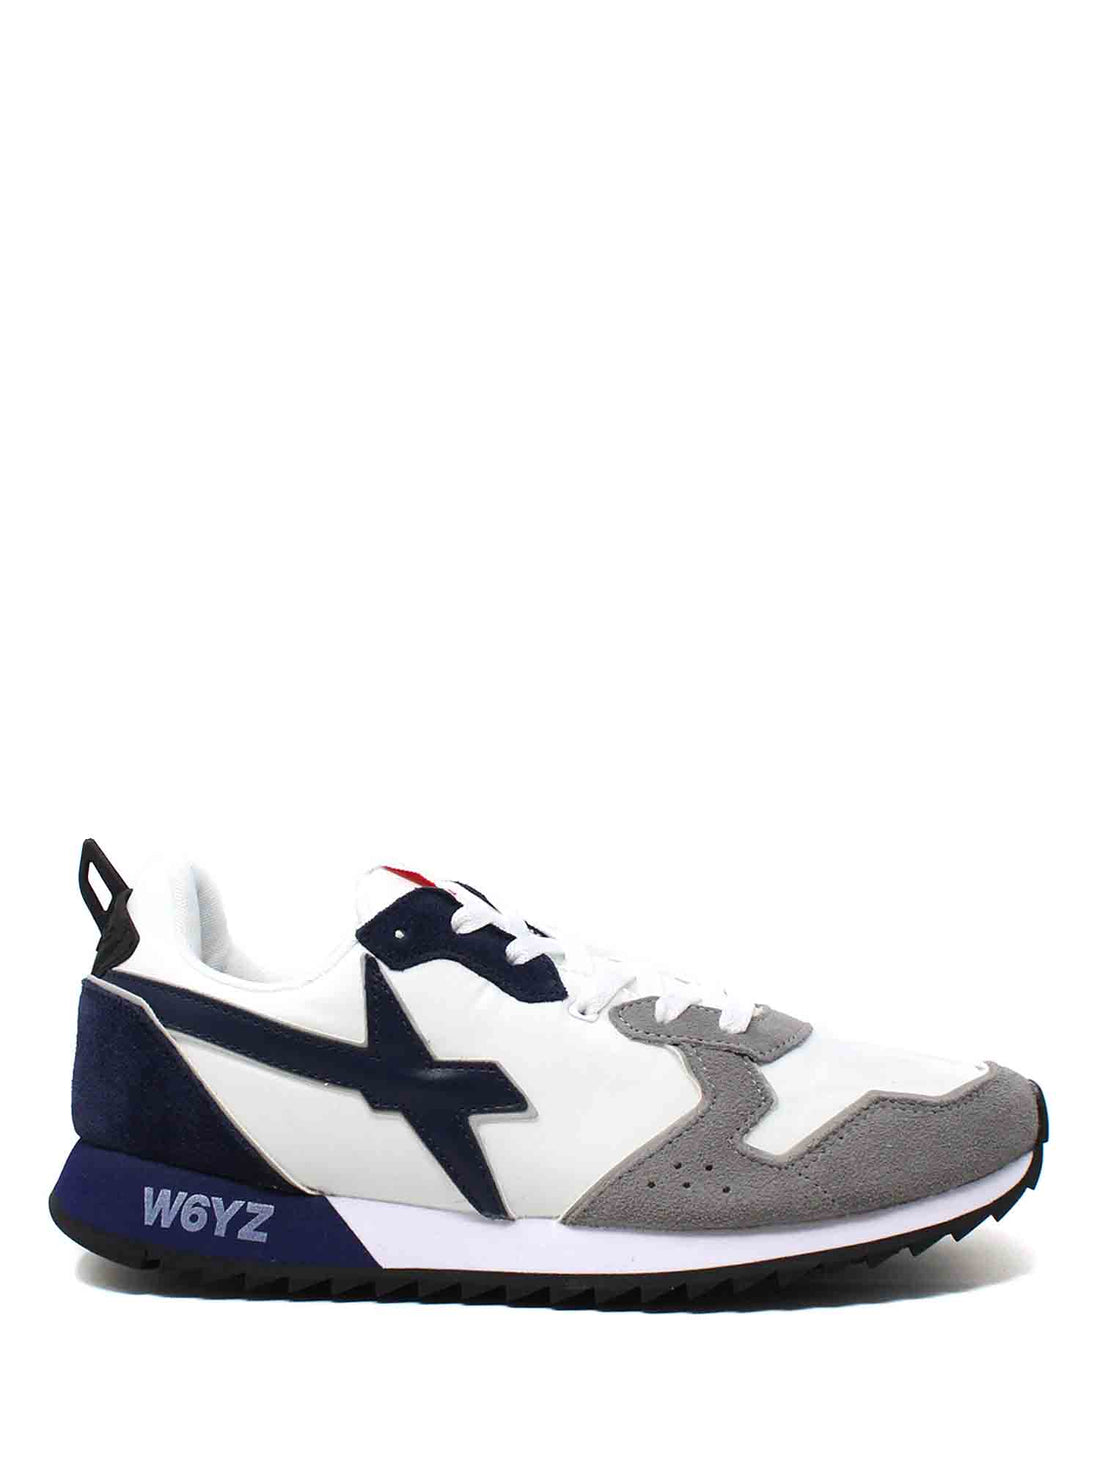 Sneakers Bianco Grigio W6yz